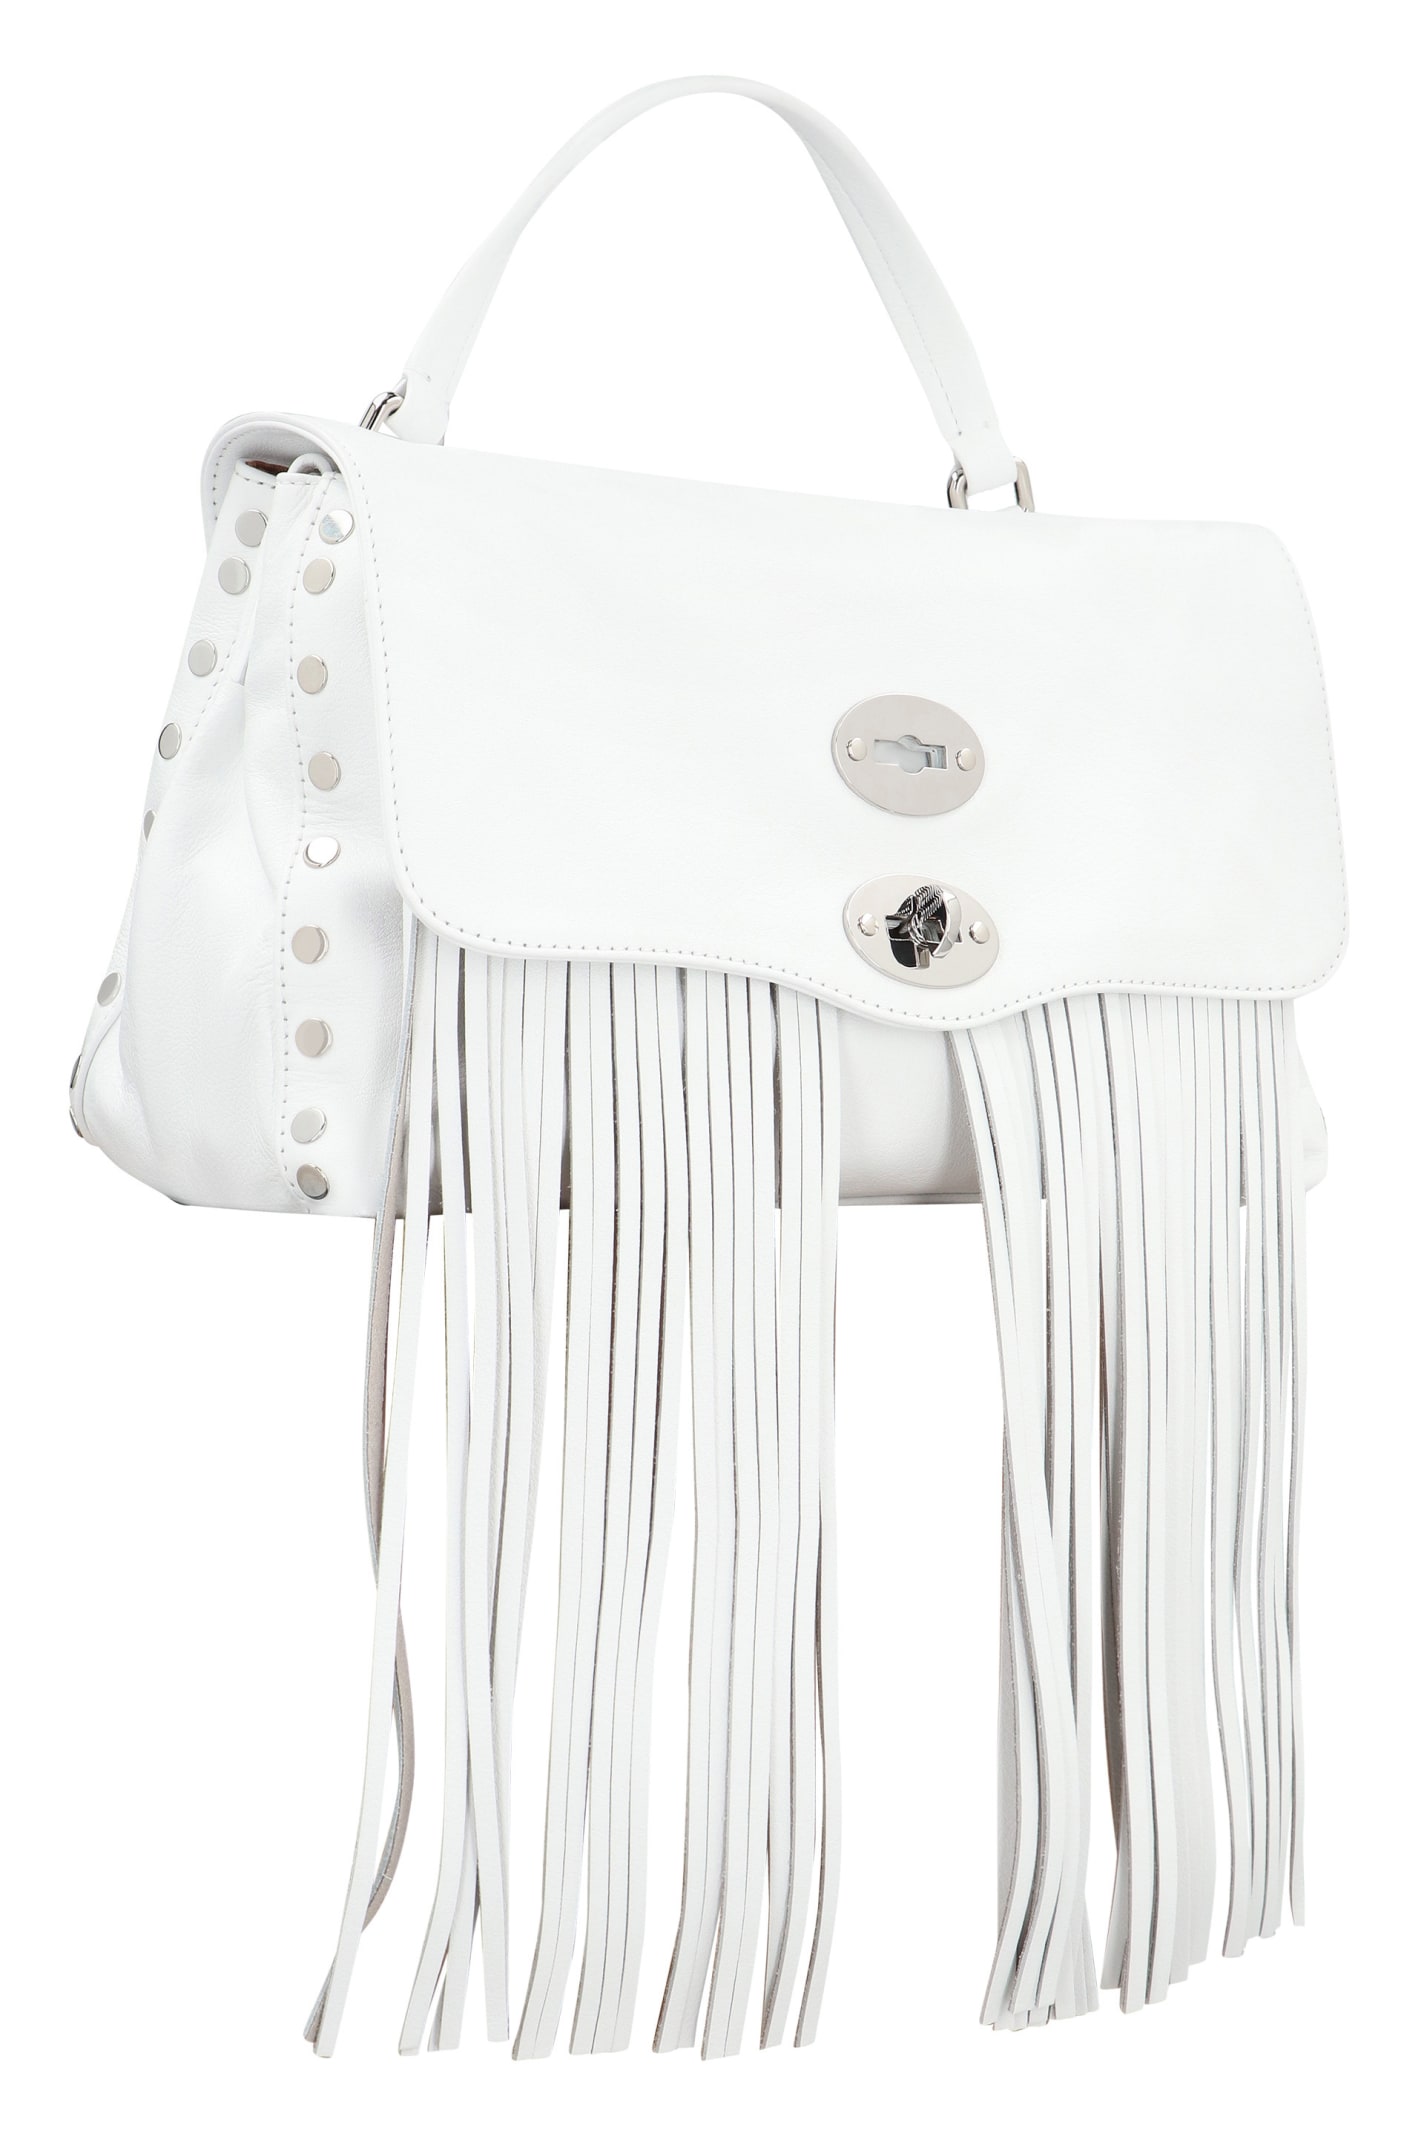 Shop Zanellato Postina S Leather Handbag In White